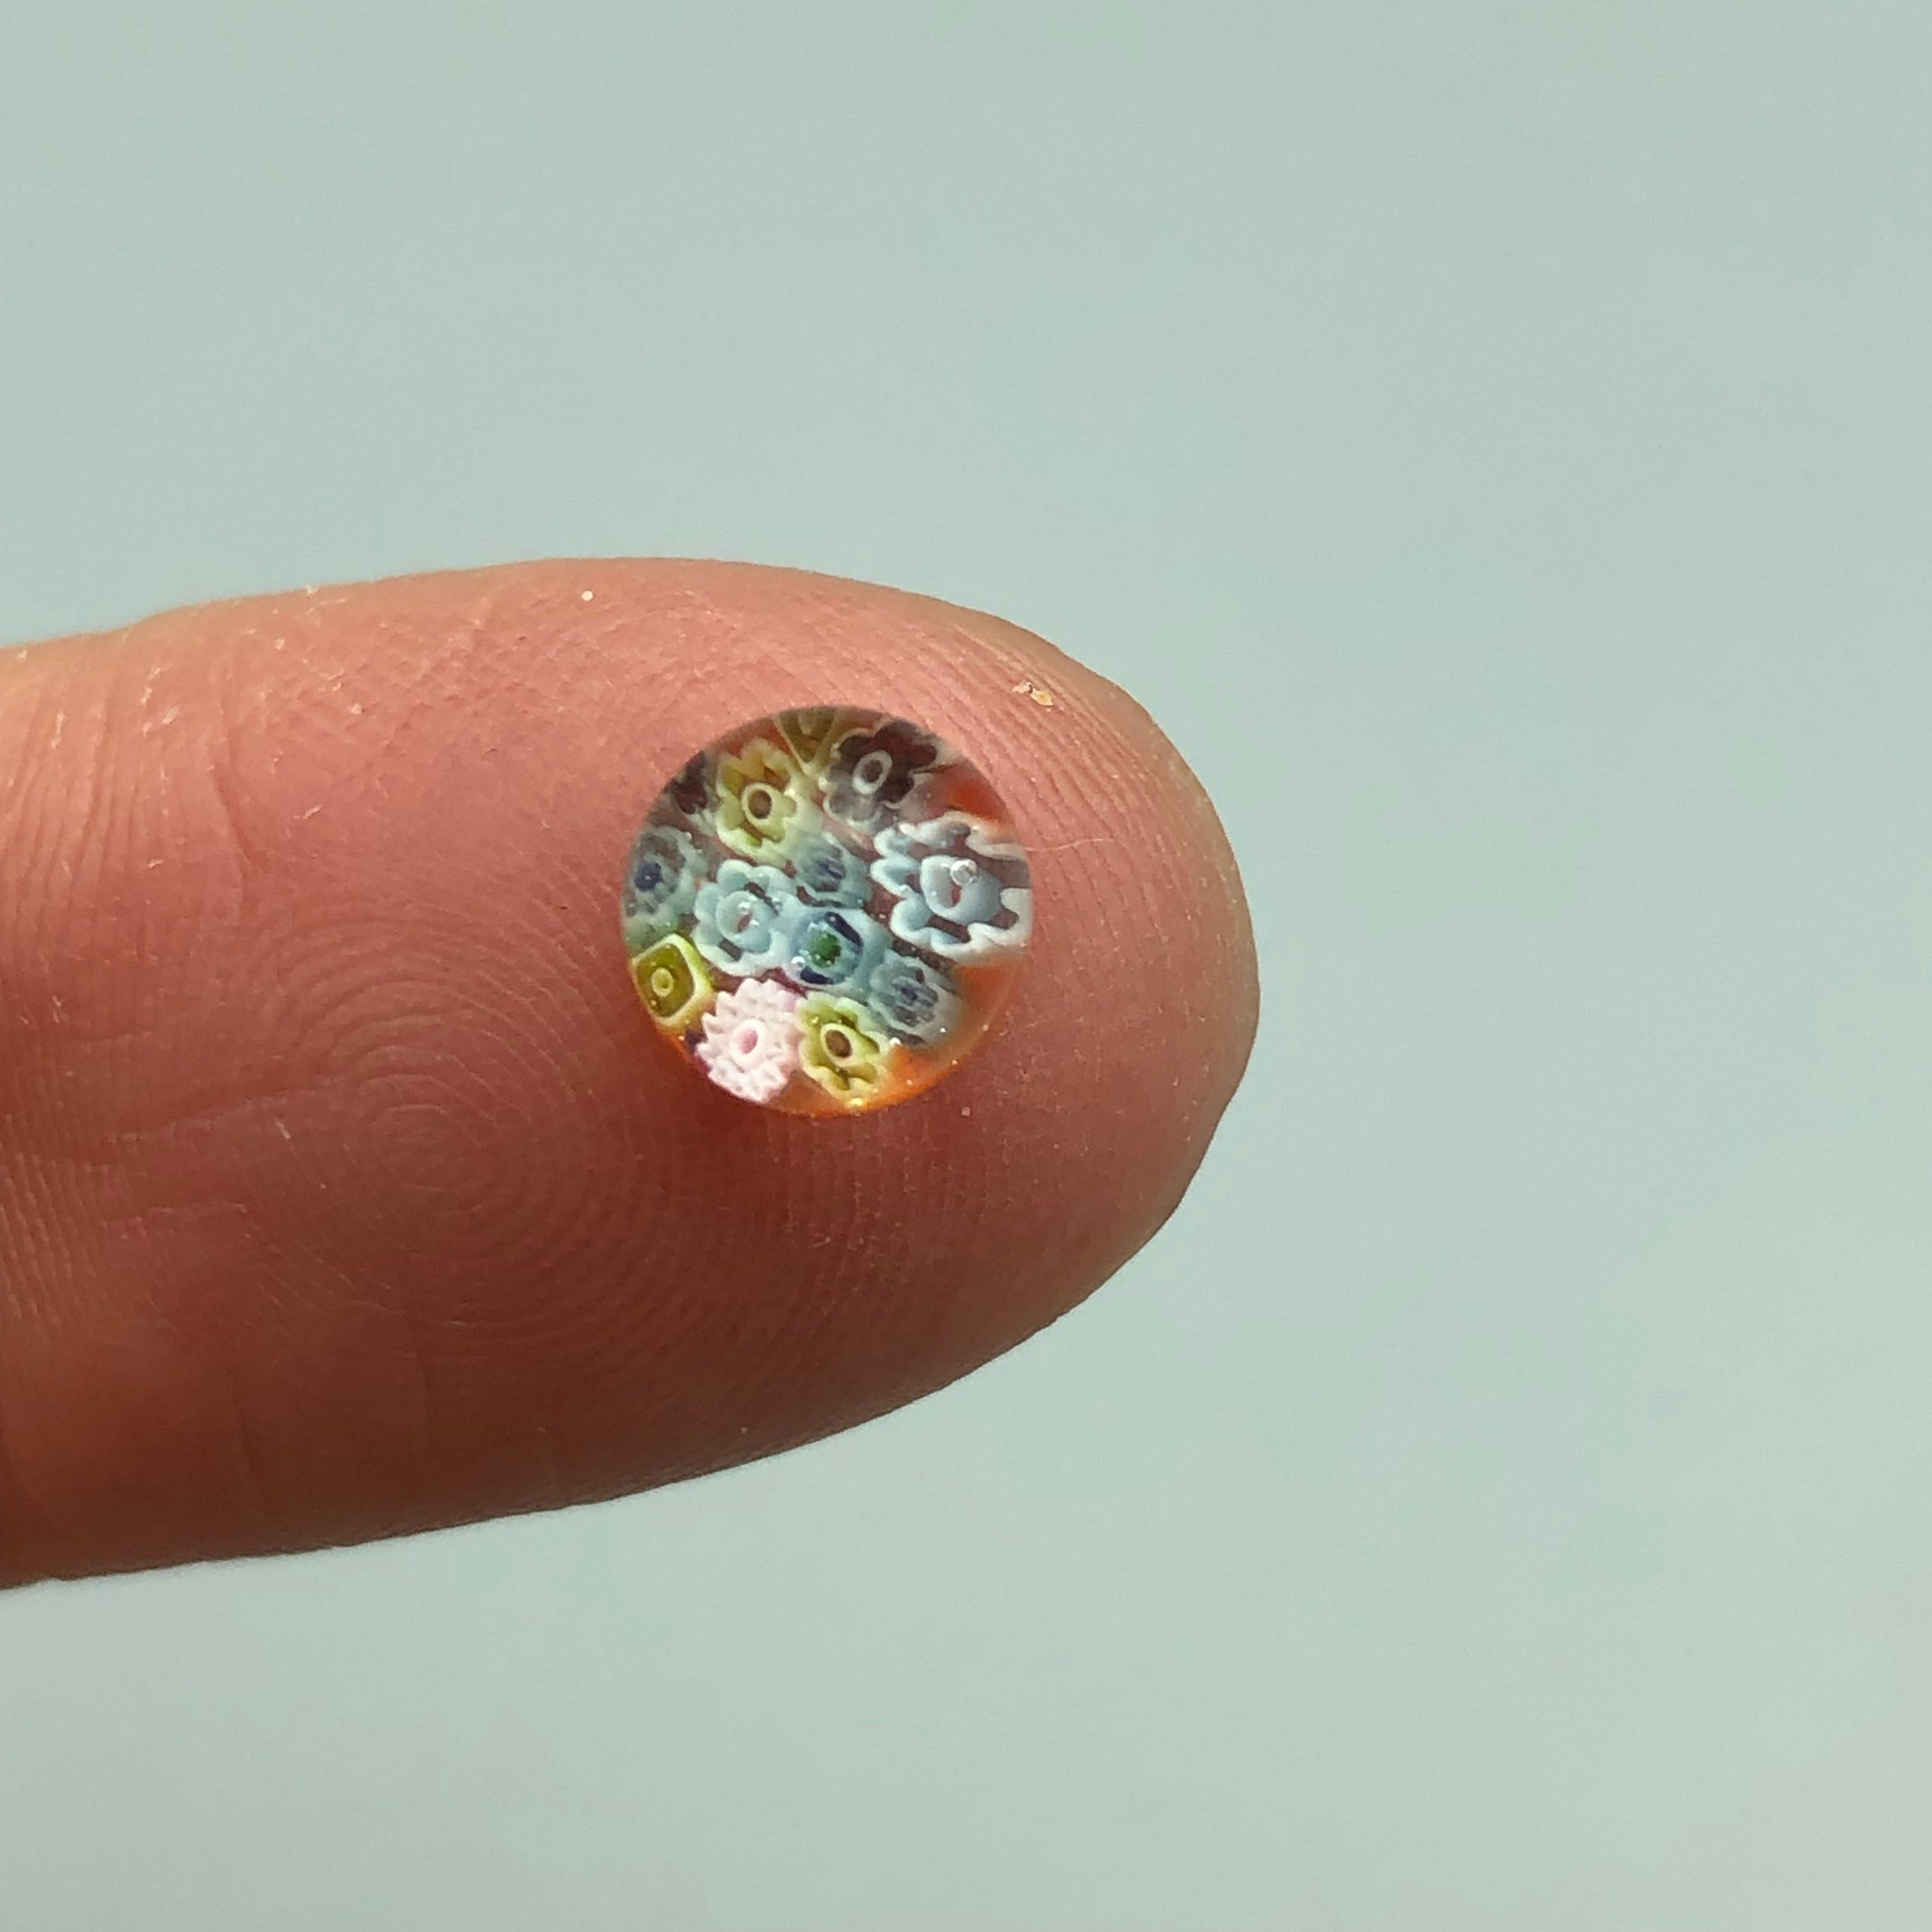 Miniatura de Cristal Pisapapel